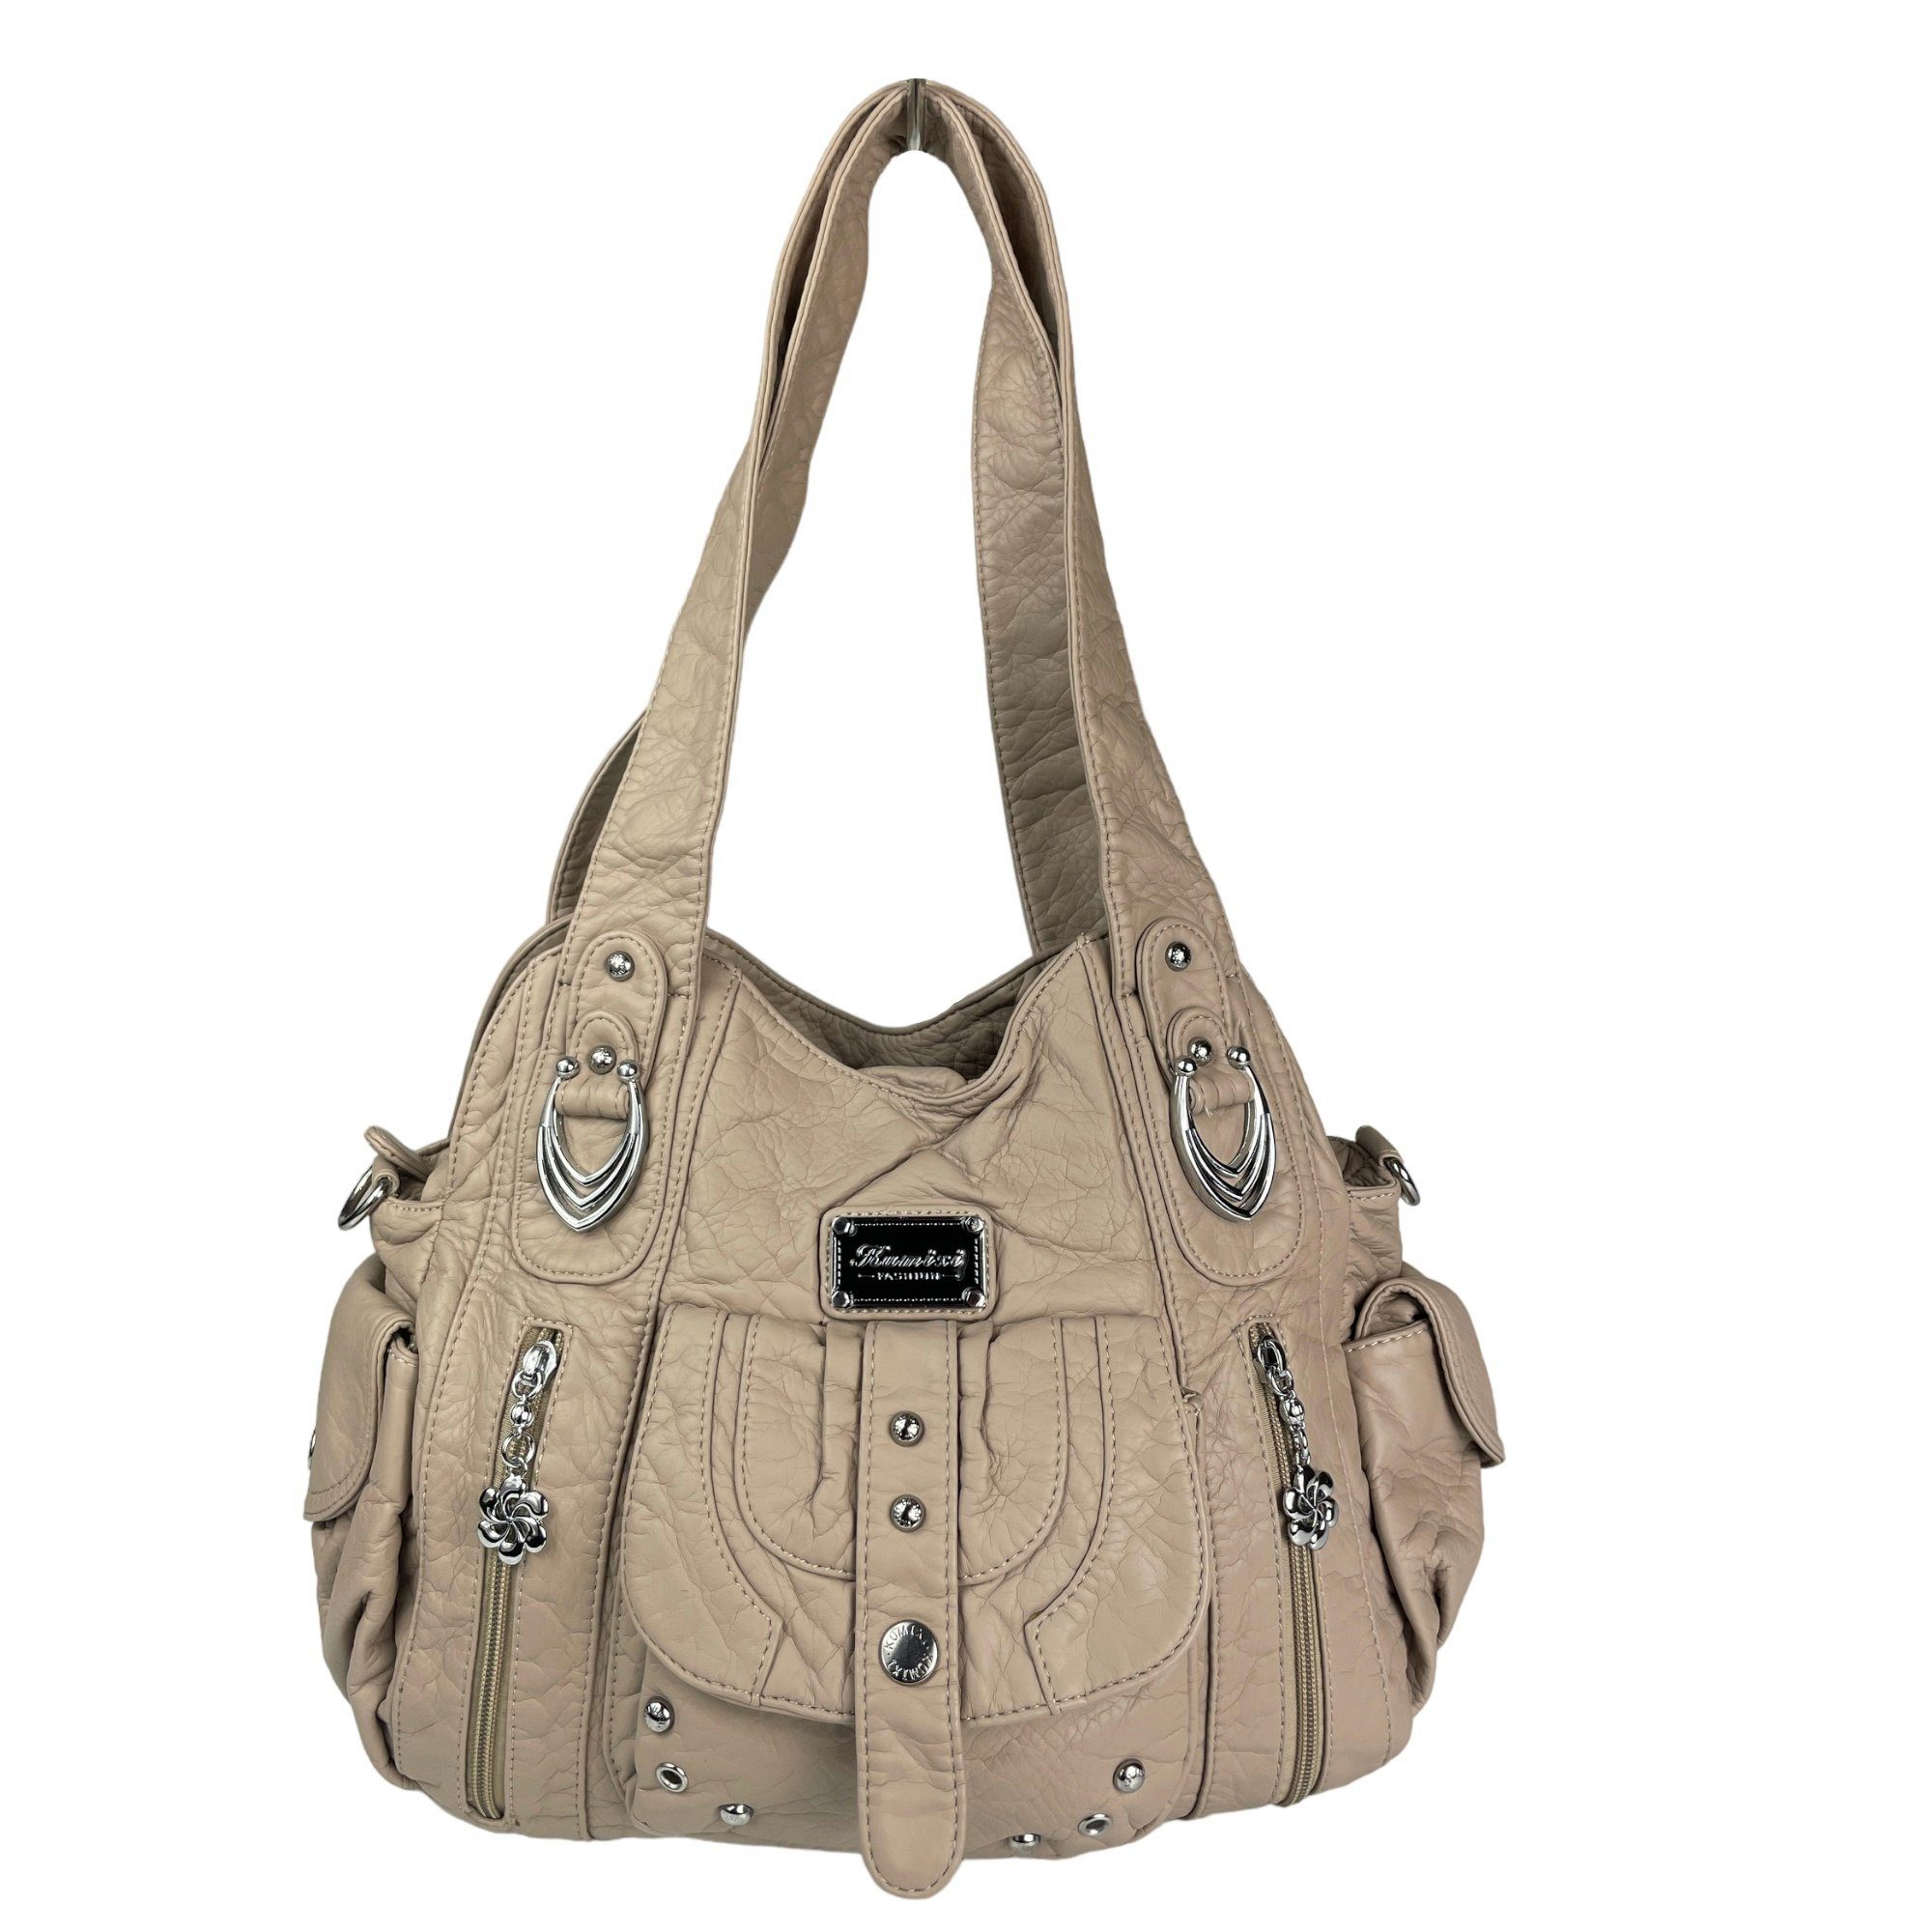 Taschen4life Schultertasche Damen Handtasche AKW22026, lange Tragegriffe & abnehmbarer Schulterriemen, Schultertasche beige